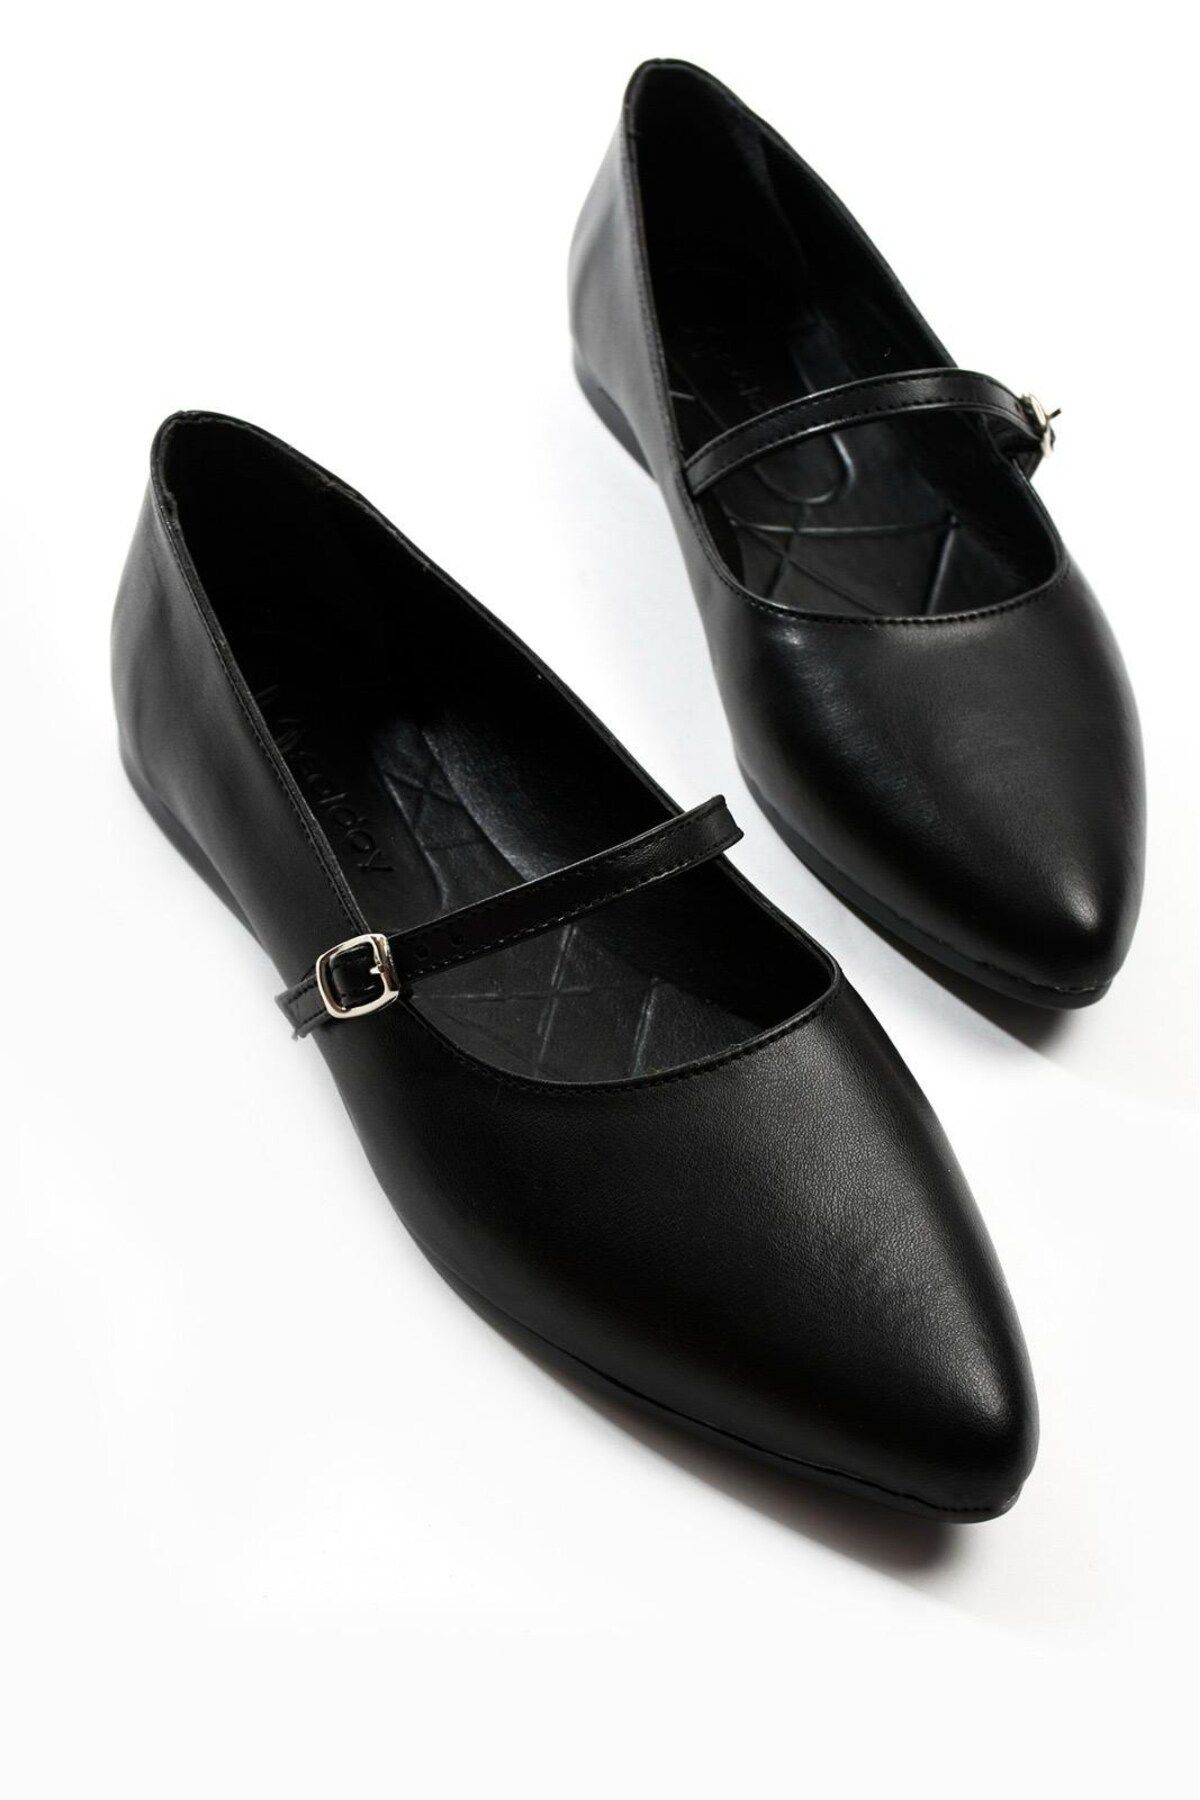 İmerShoes Günlük Kadın Siyah Babet Sivri Burunlu Alçak Topuklu Tokalı Sade Şık Rahat Ayakkabı S-417